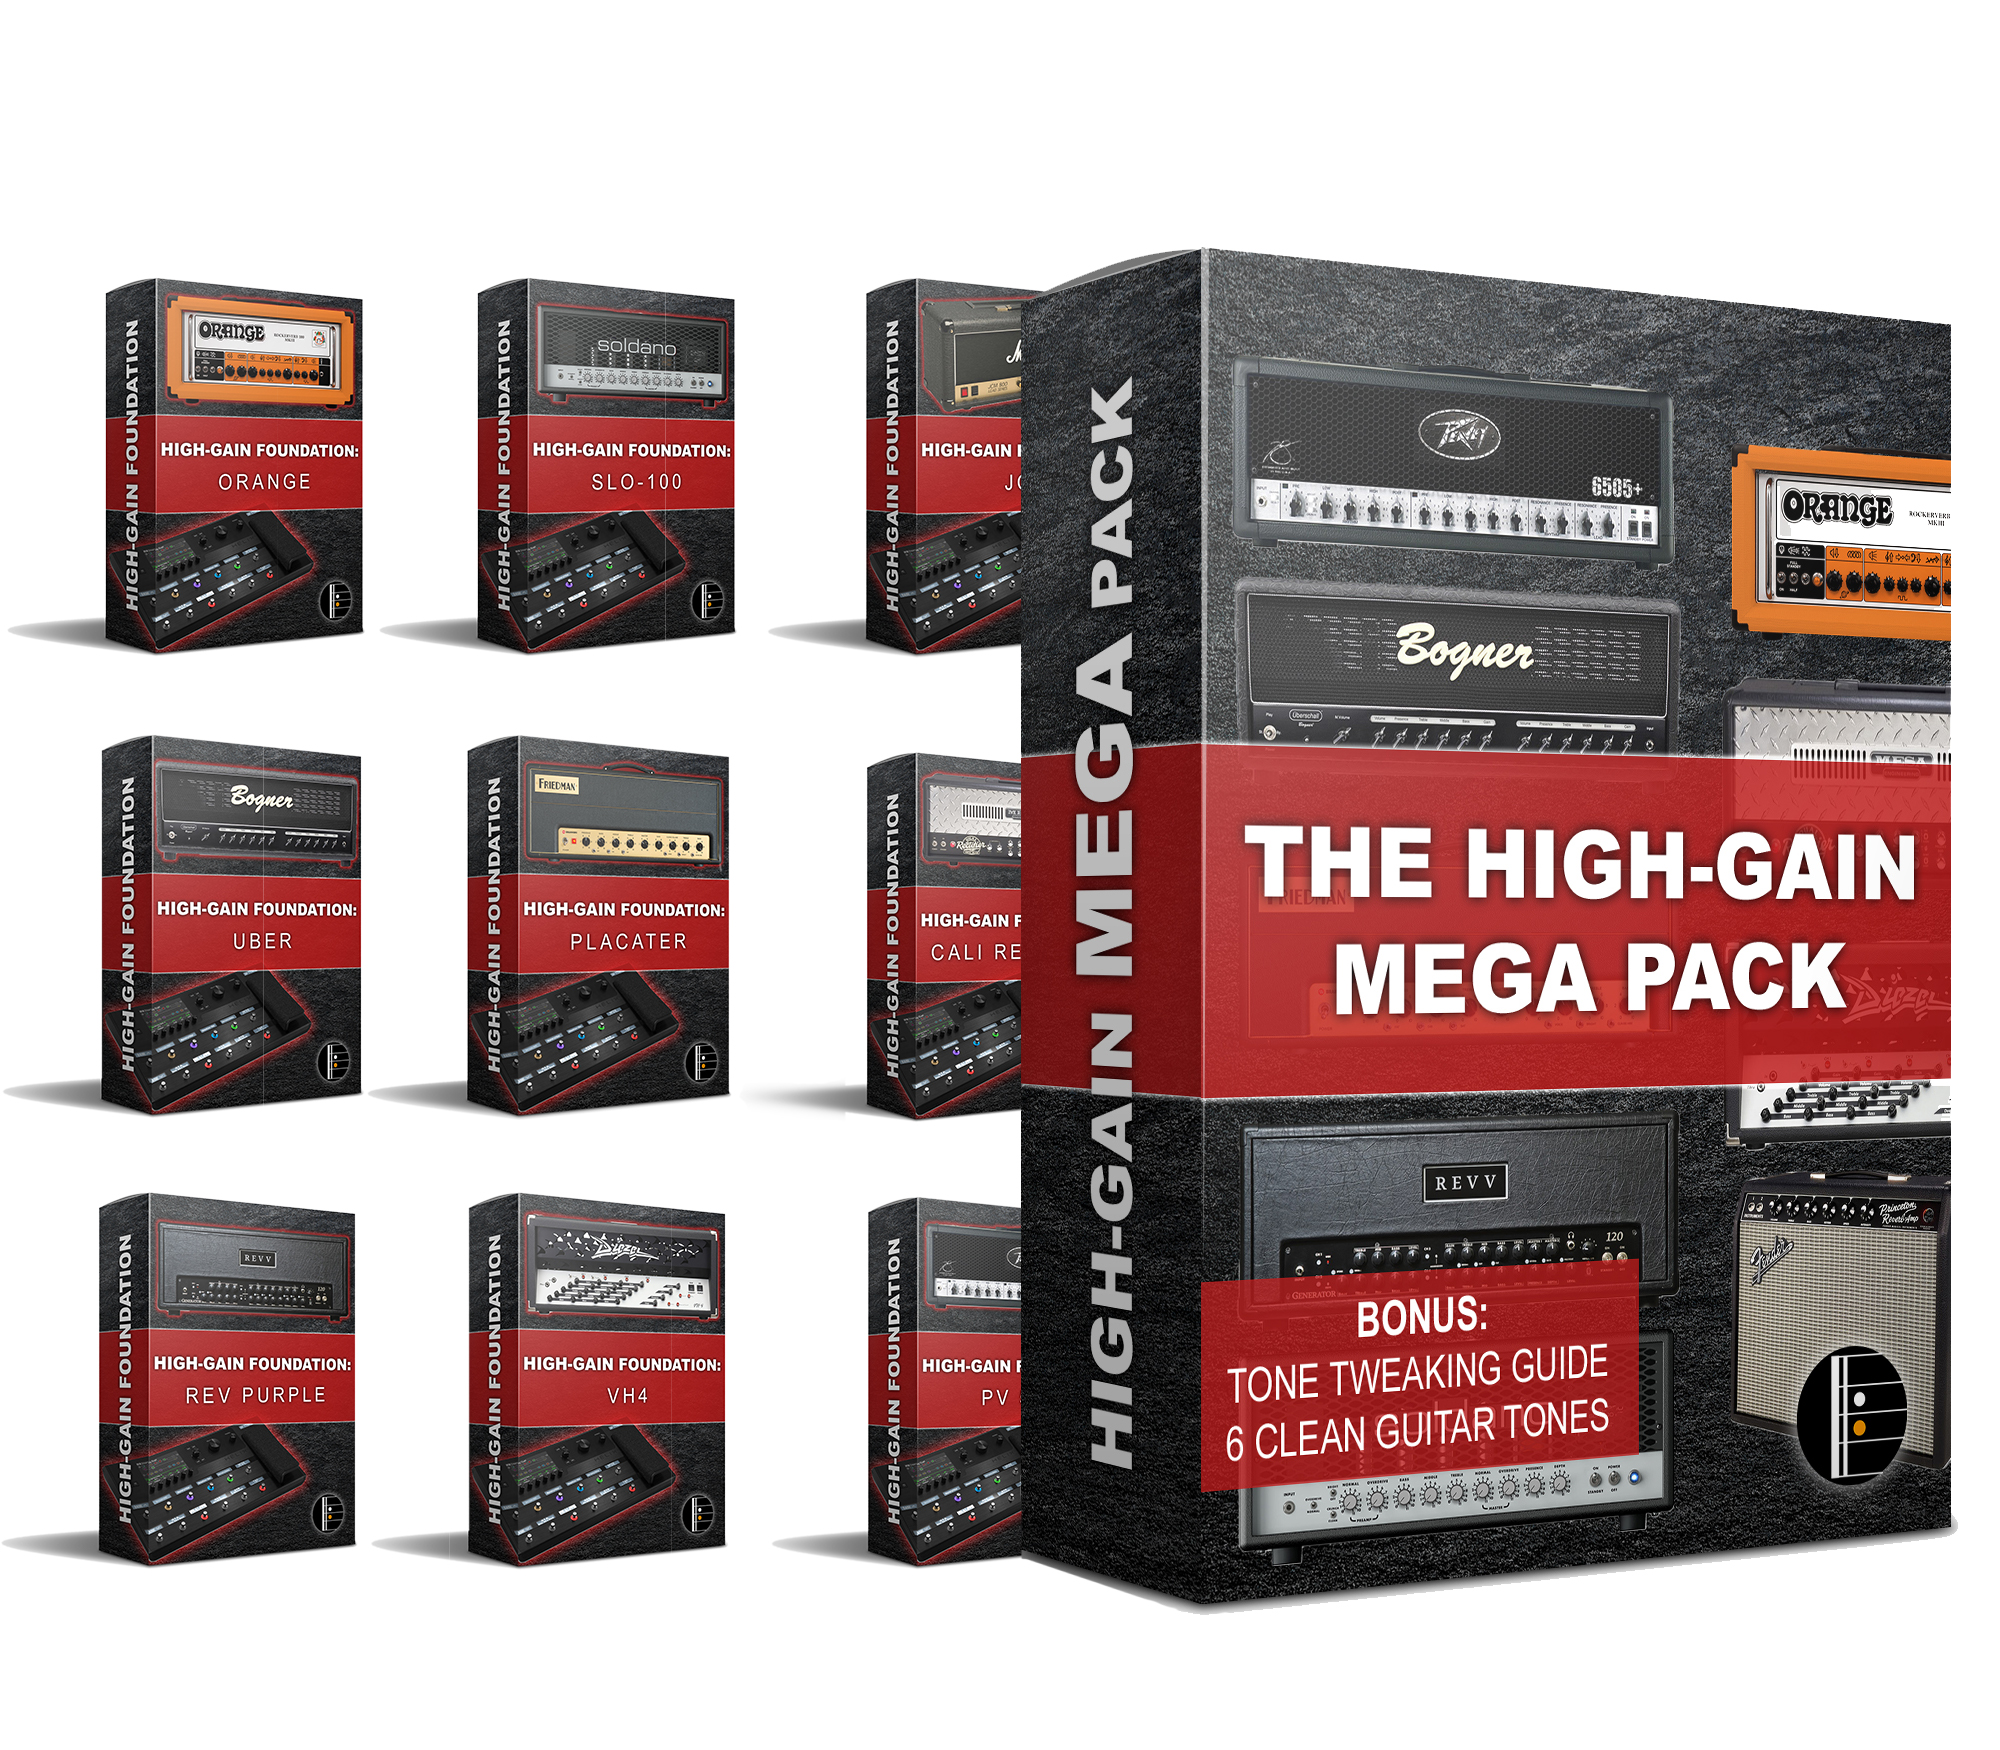 the high-gain mega pack